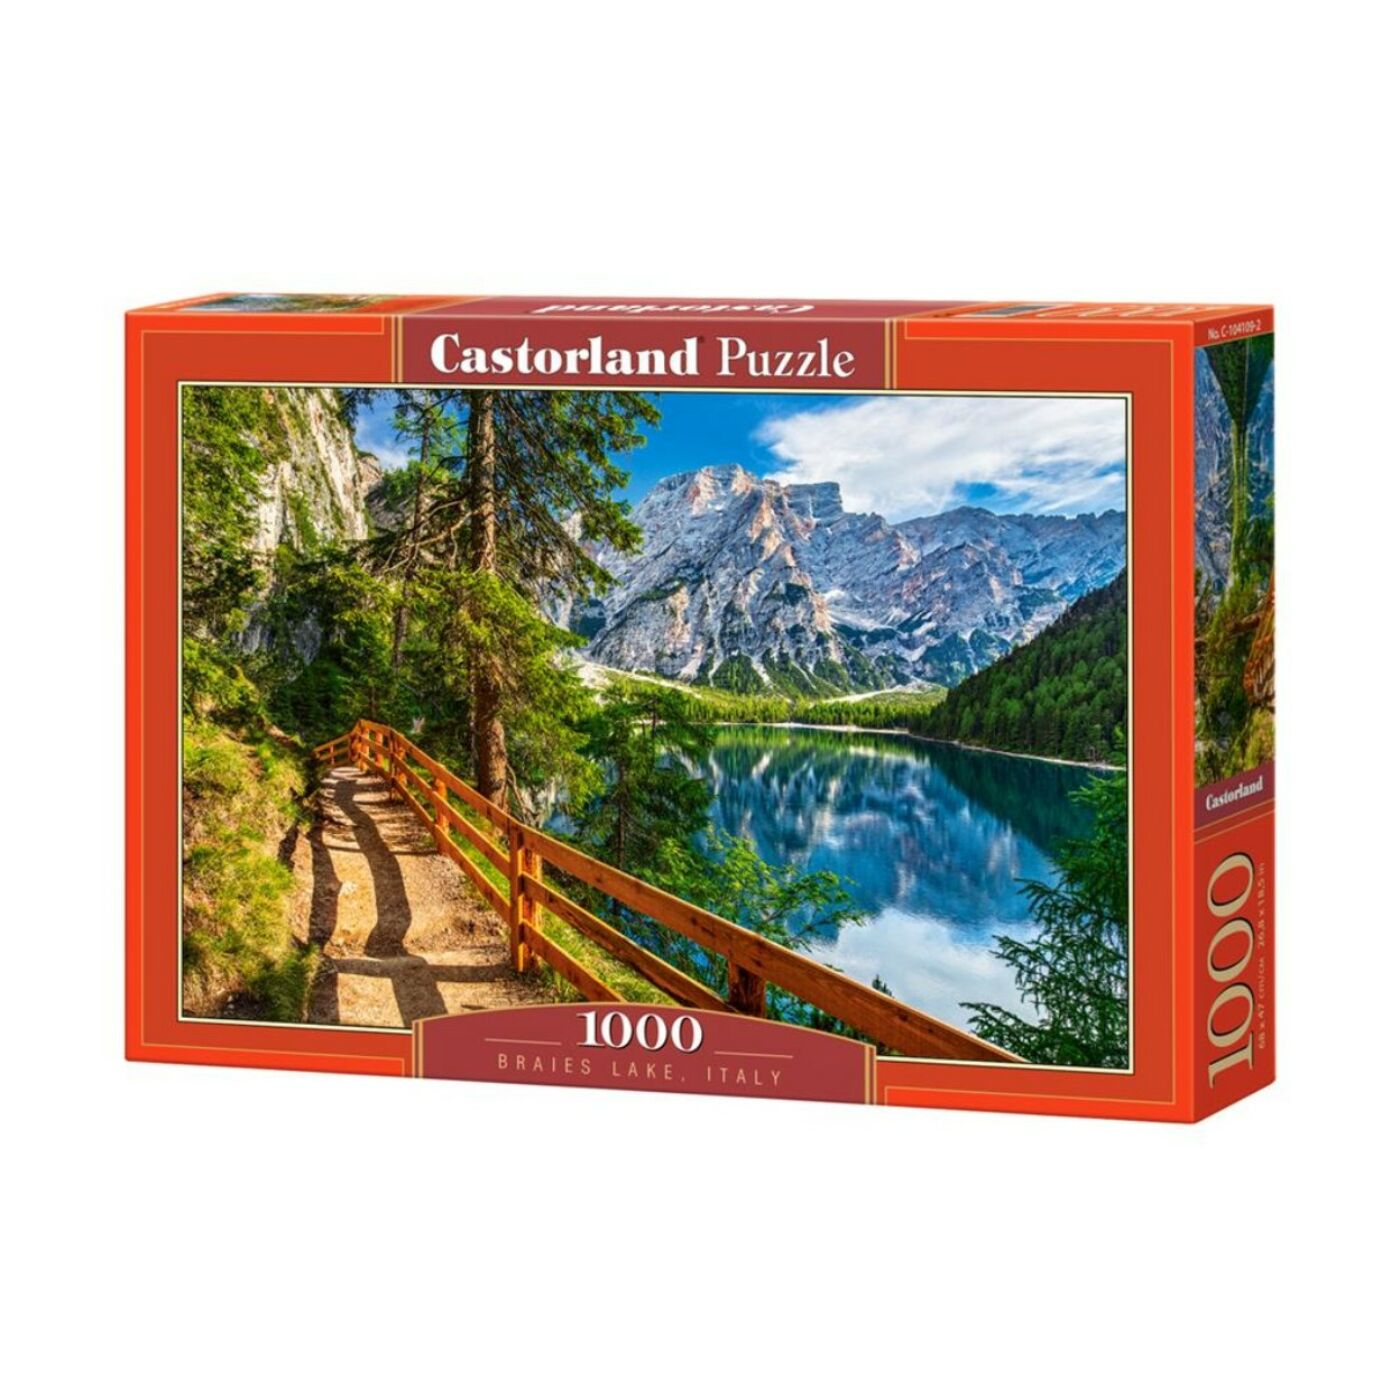 1000 db-os Castorland Puzzle - Braies tó, Olaszország